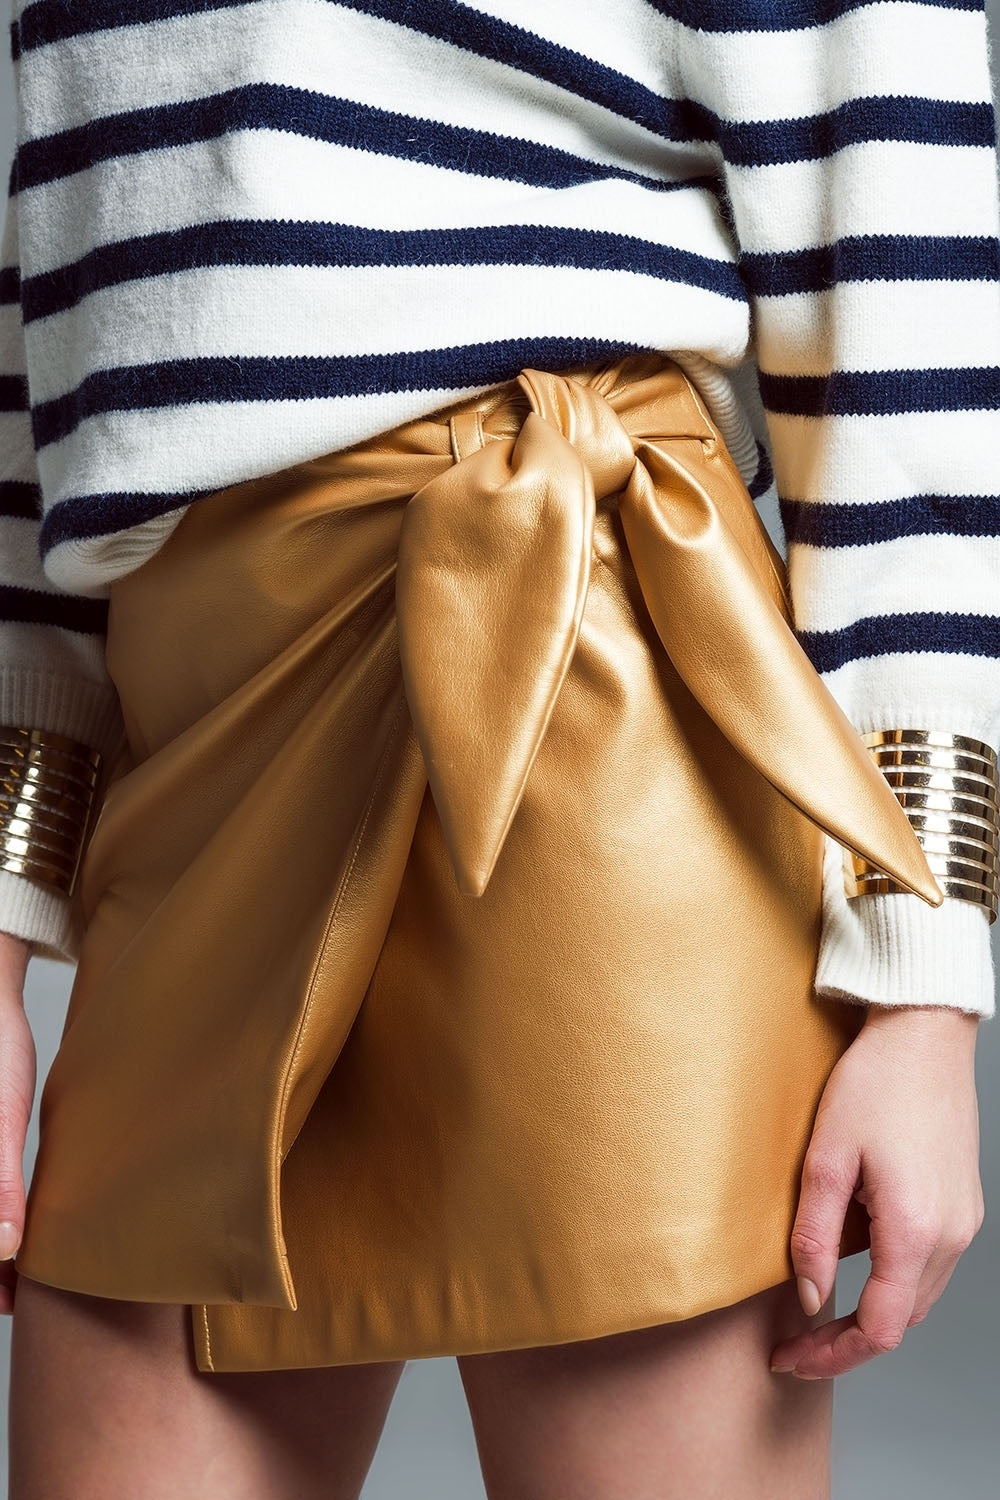 Μίνι φούστα από ψεύτικο δέρμα με φιόγκο στο πλάι σε χρυσό χρώμα